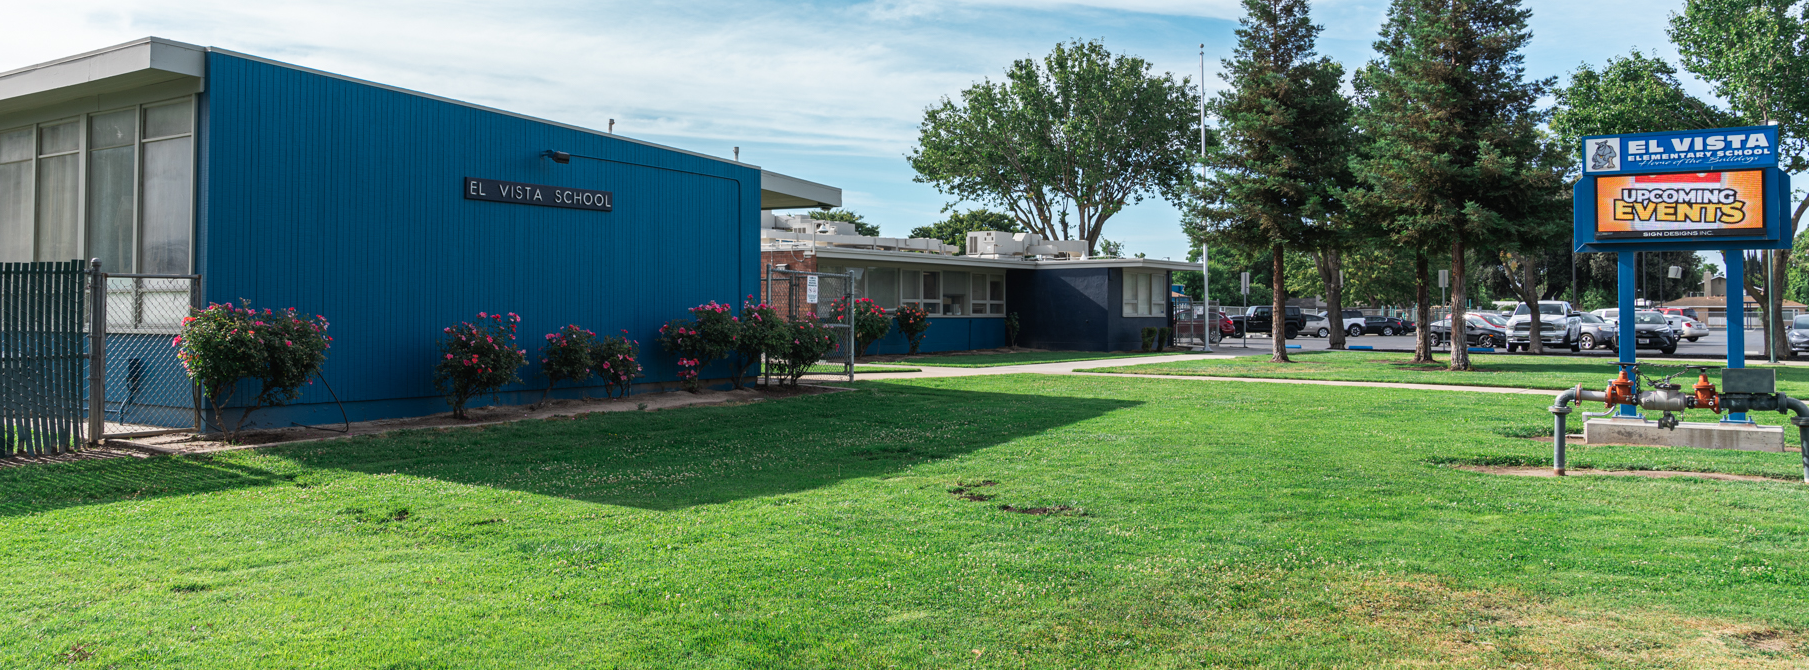 El Vista School entrance with marquee